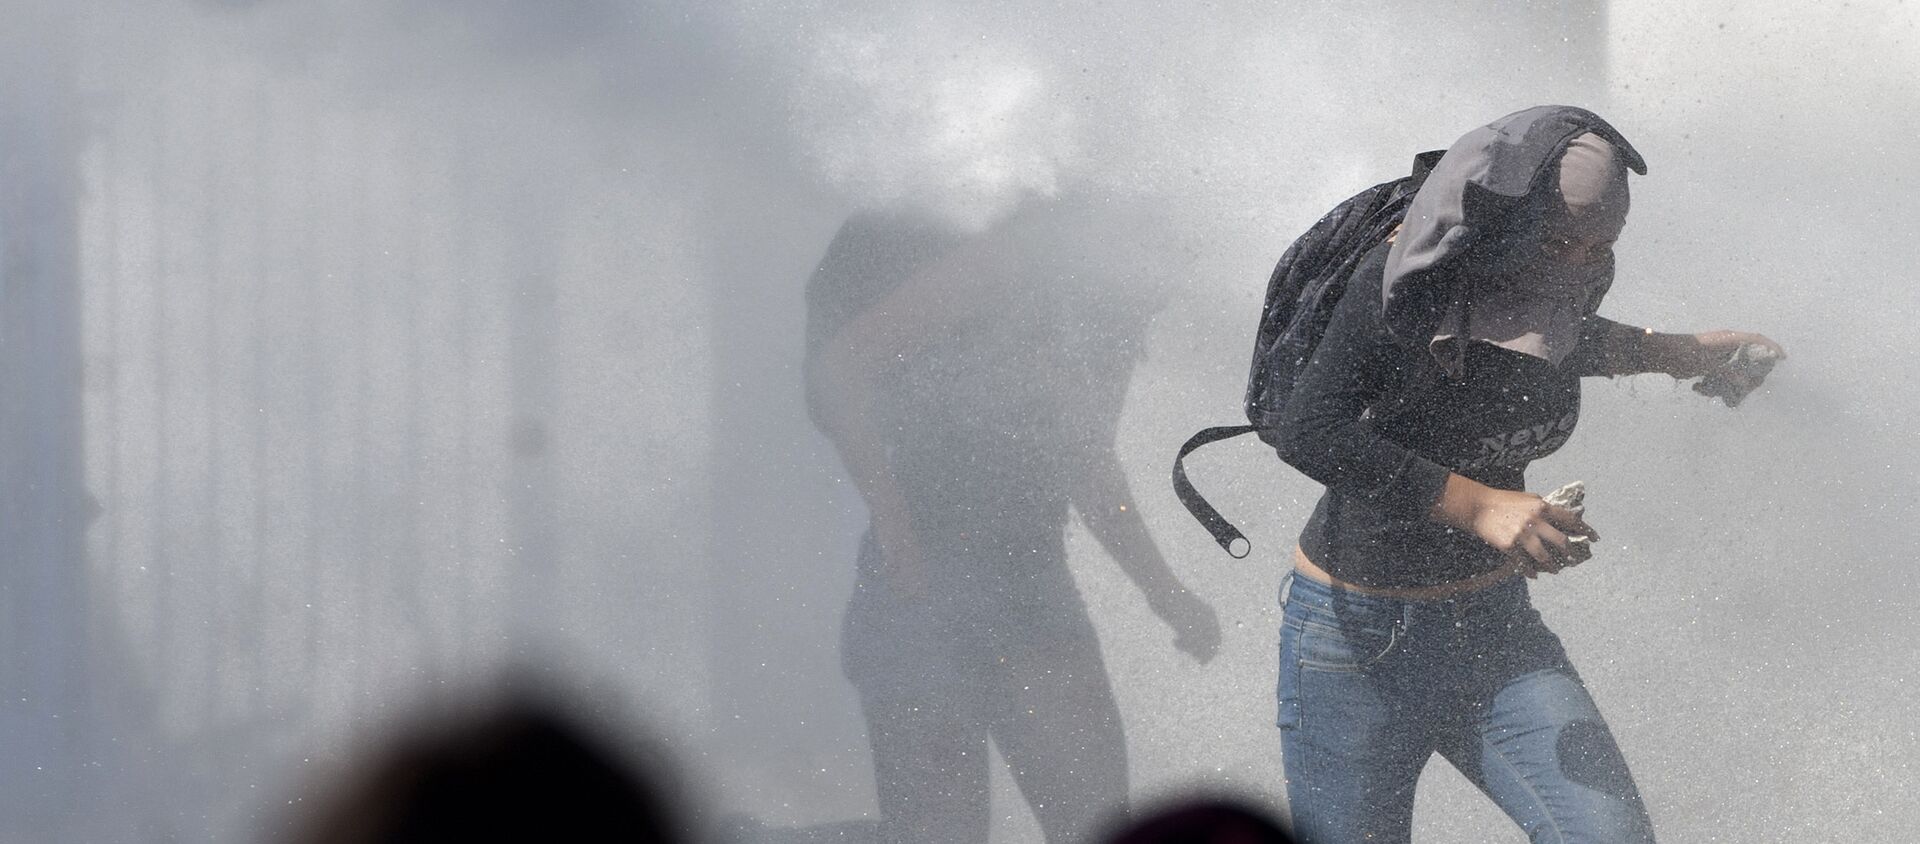 Manifestantes corriendo de la represión policial en el Día del Joven Combatiente de 2012 en Chile. - Sputnik Mundo, 1920, 29.03.2019